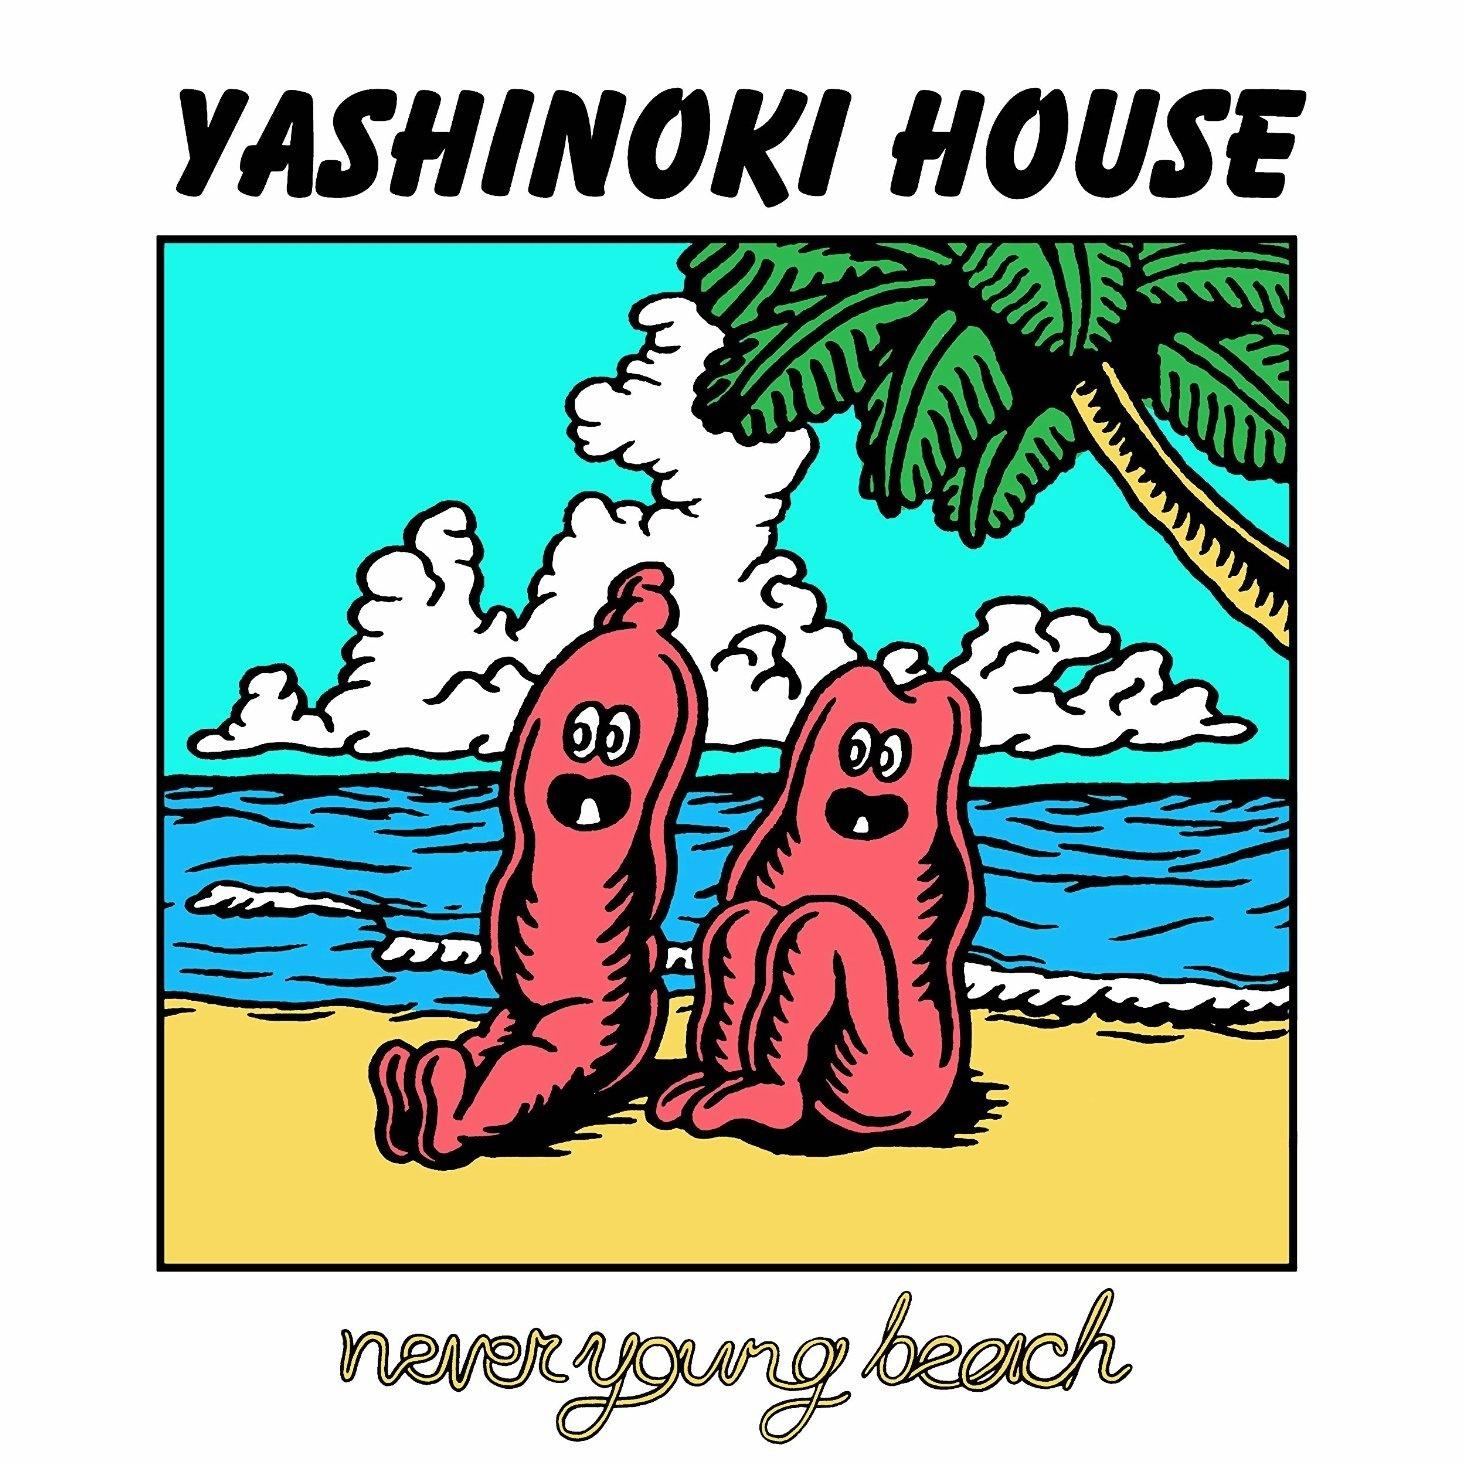 どうでもいいけど歌词 歌手never young beach-专辑YASHINOKI HOUSE-单曲《どうでもいいけど》LRC歌词下载